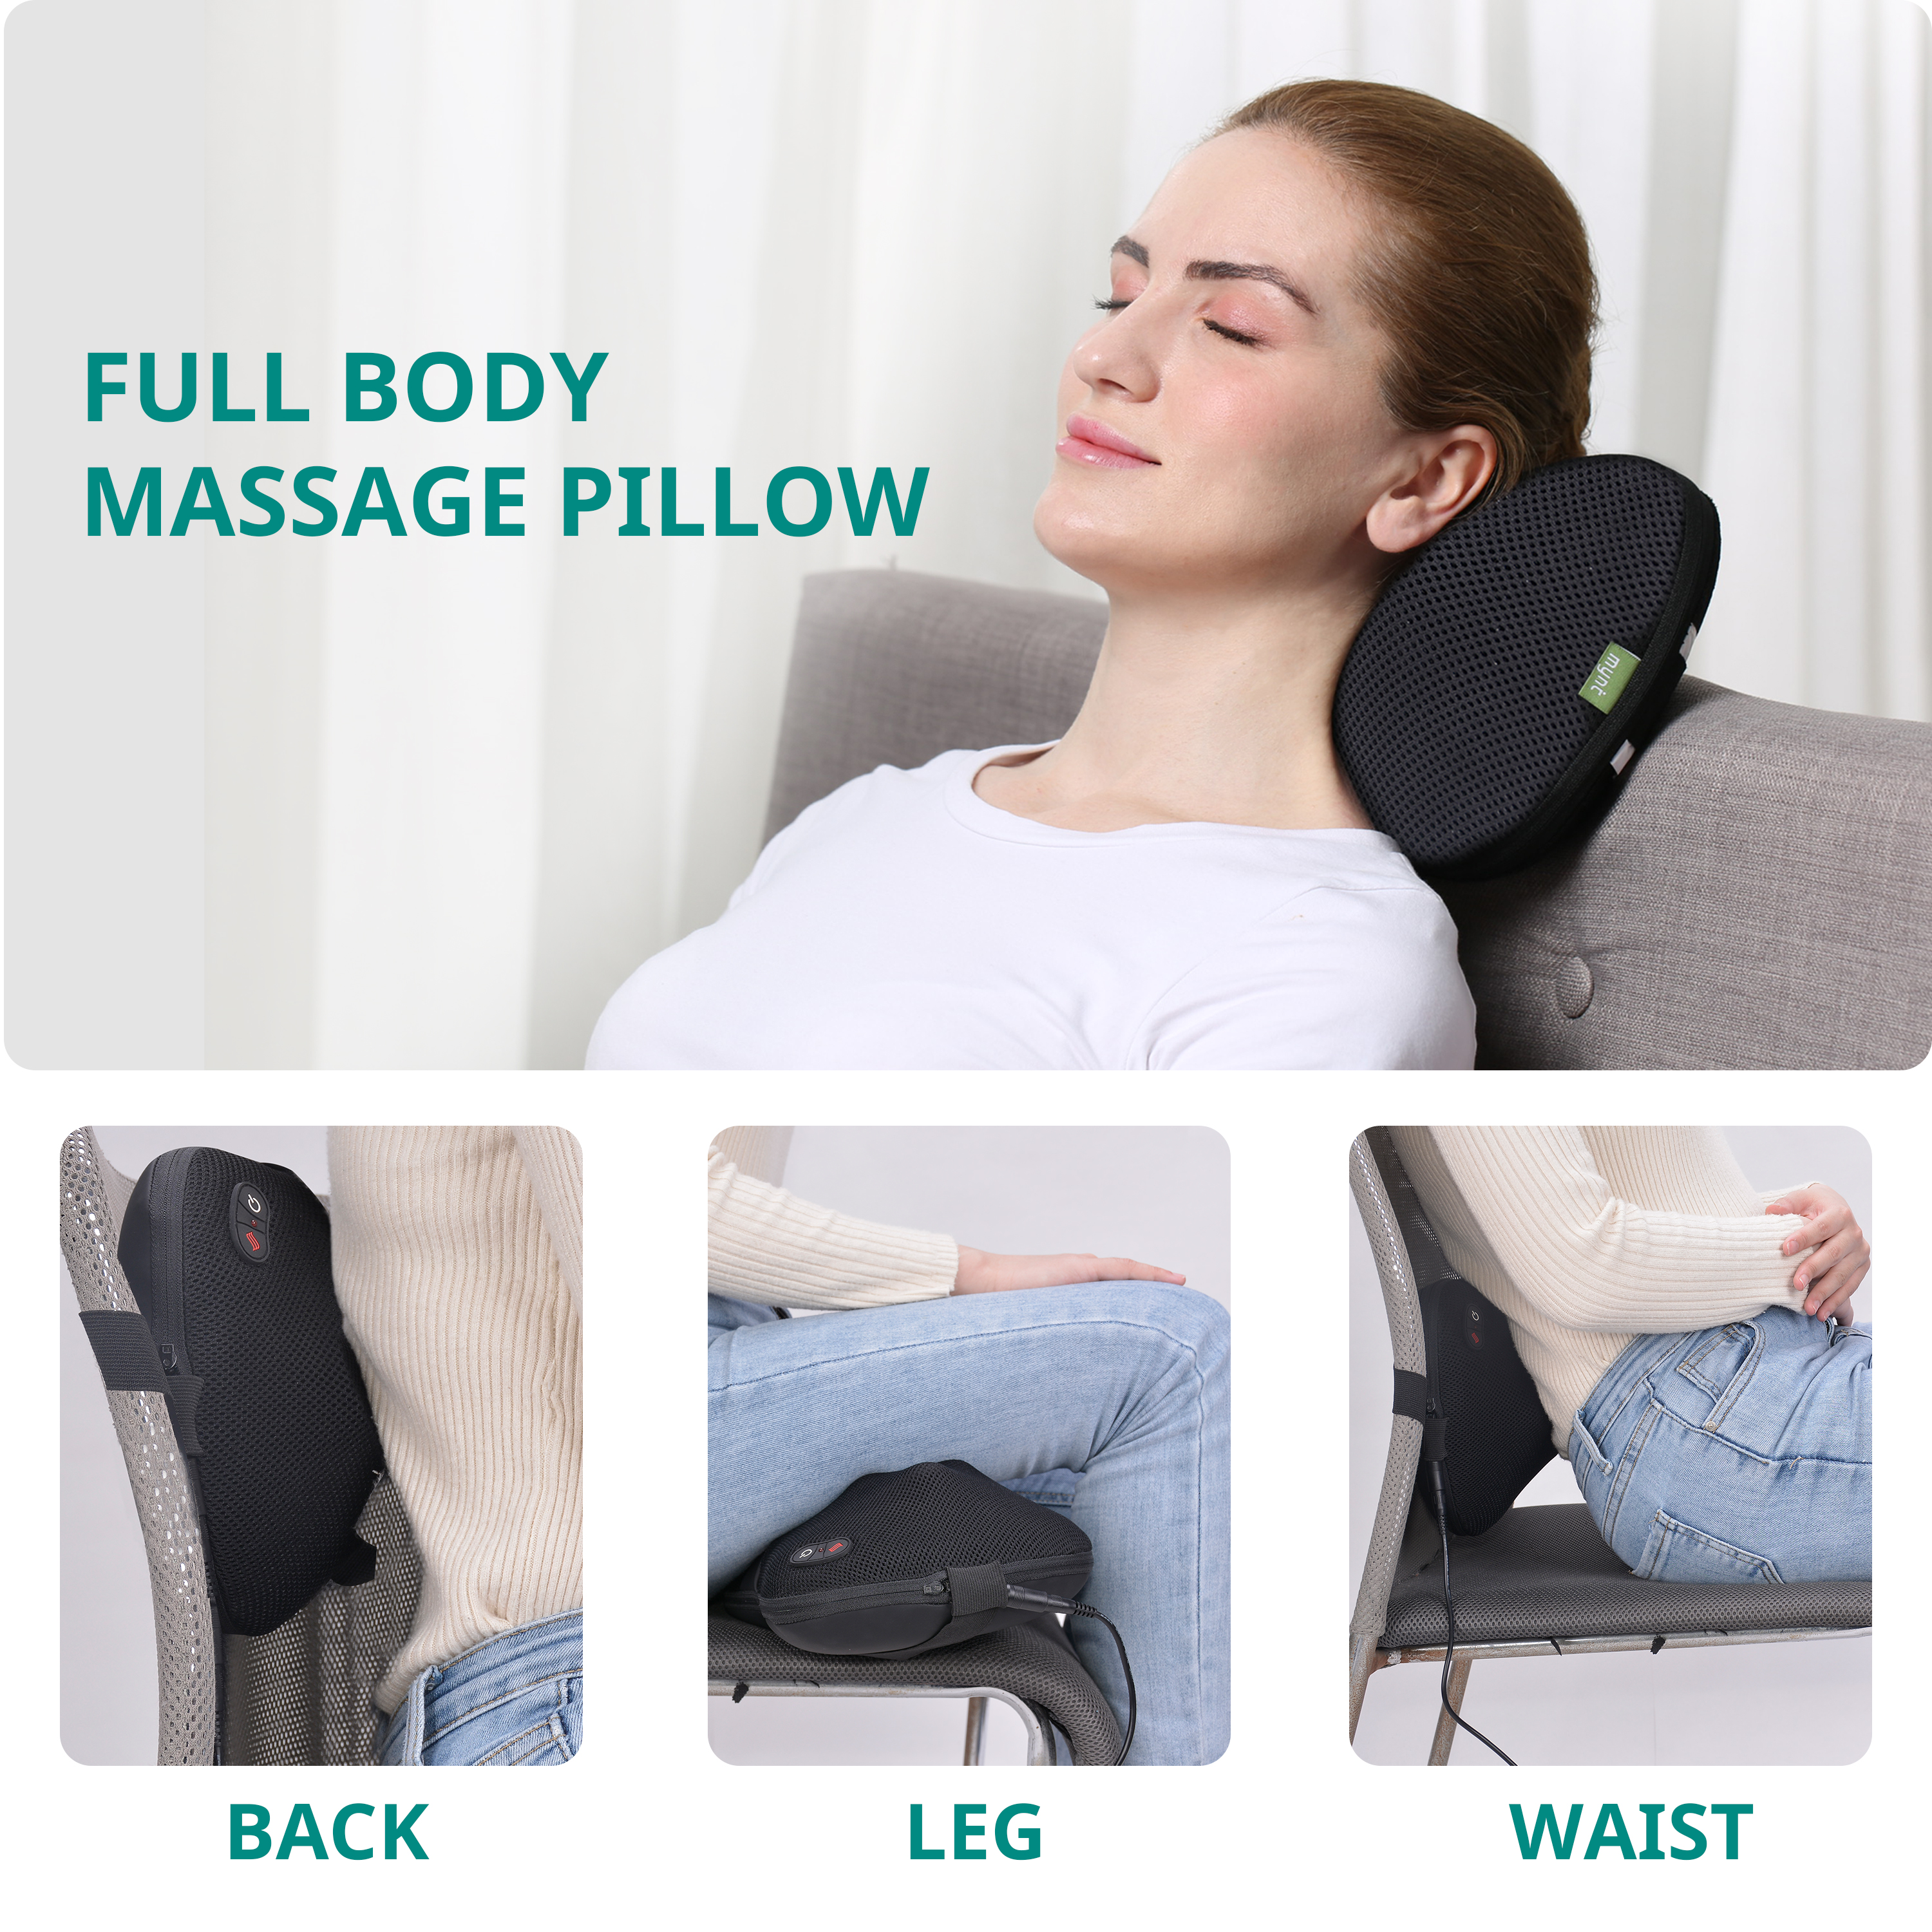 Mynt Shiatsu Heat Massage Pillow with 6 Massage Balls